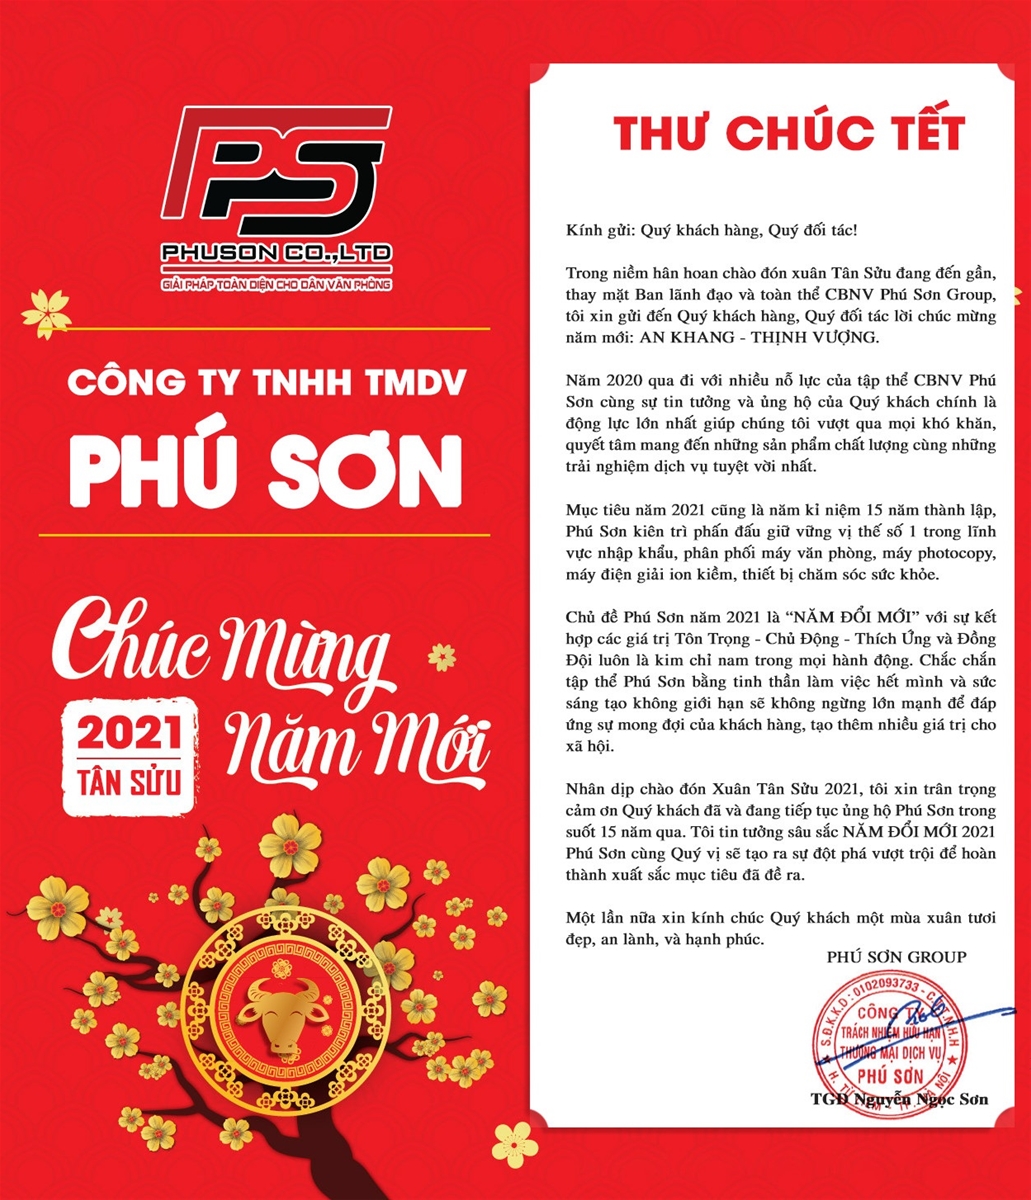 Thư Chúc Tết Công ty TNHH Thườn mại Dịch vụ Phú Sơn